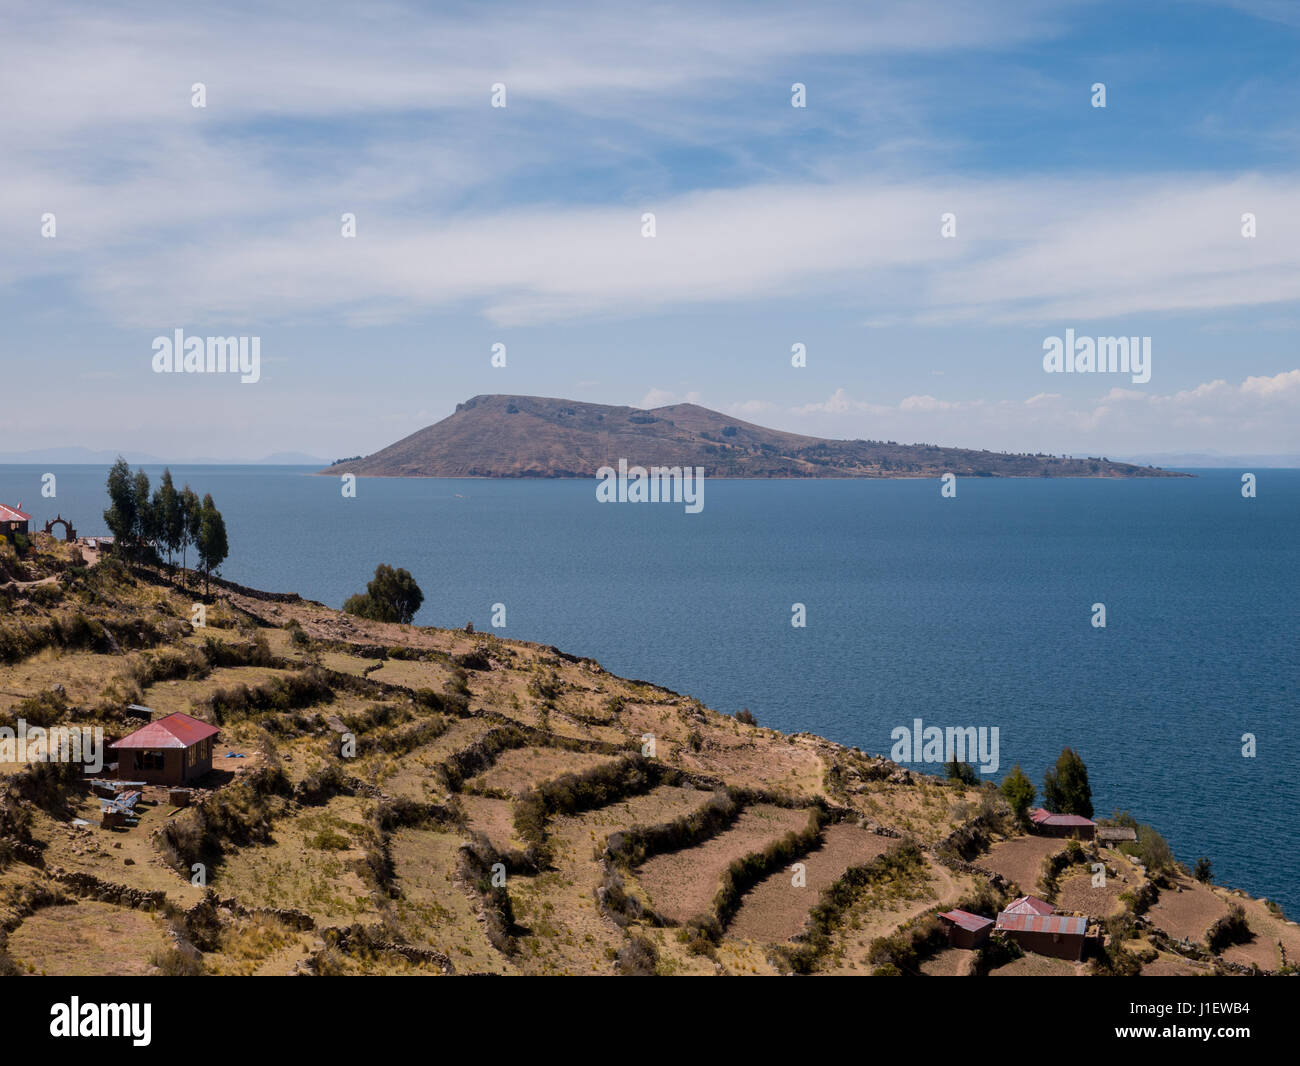 Vista de el misterioso Lago Titicaca desde la Isla Taquile, región Puno, Perú Foto de stock